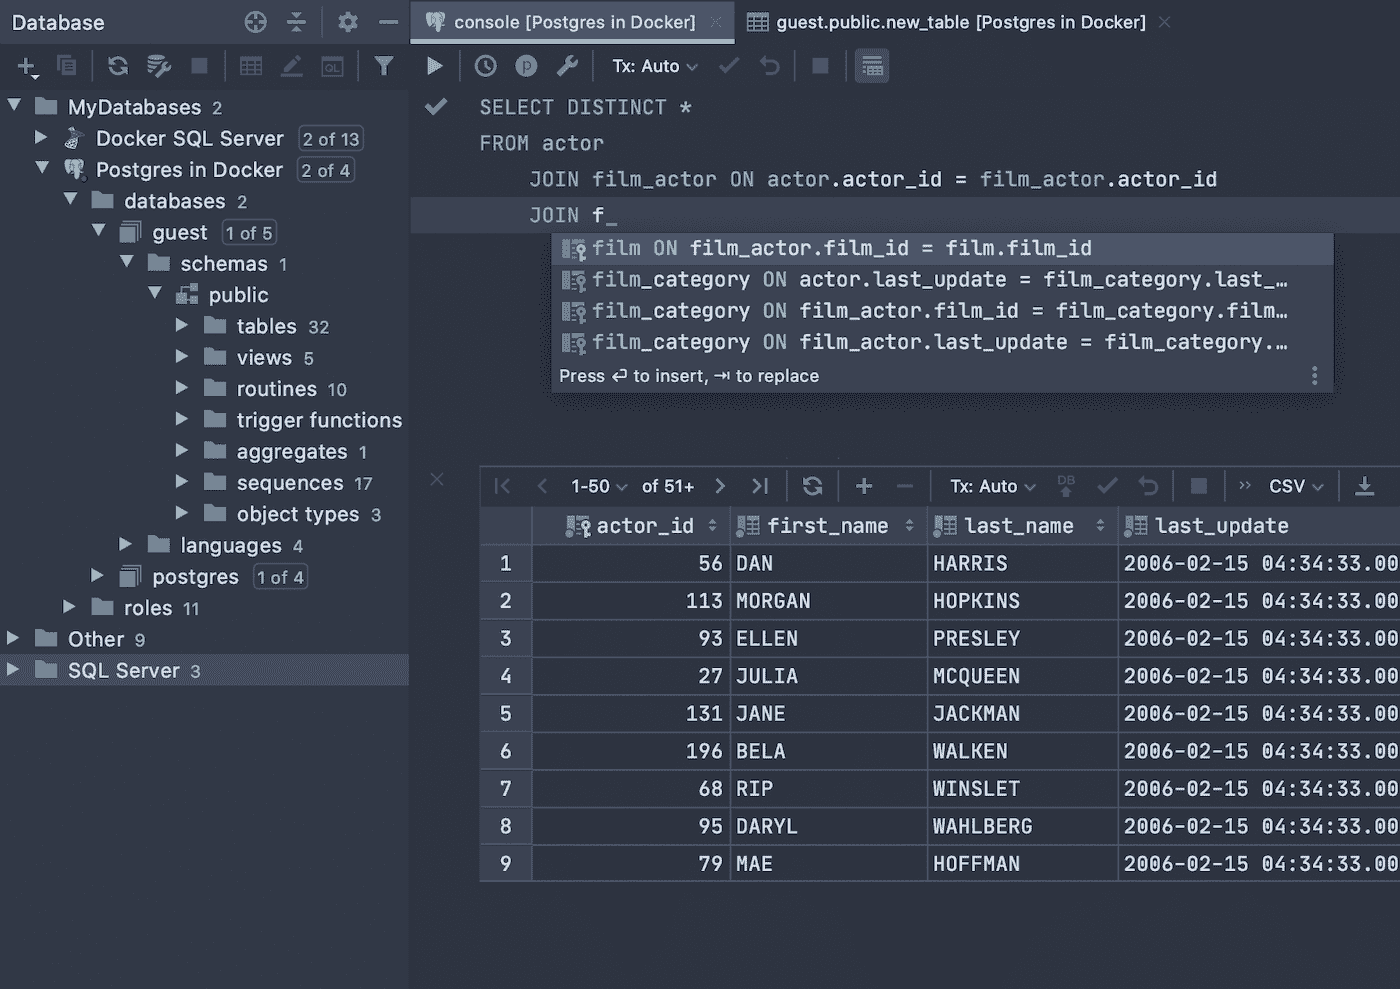 DataGrip 2021.2.4 for mac 